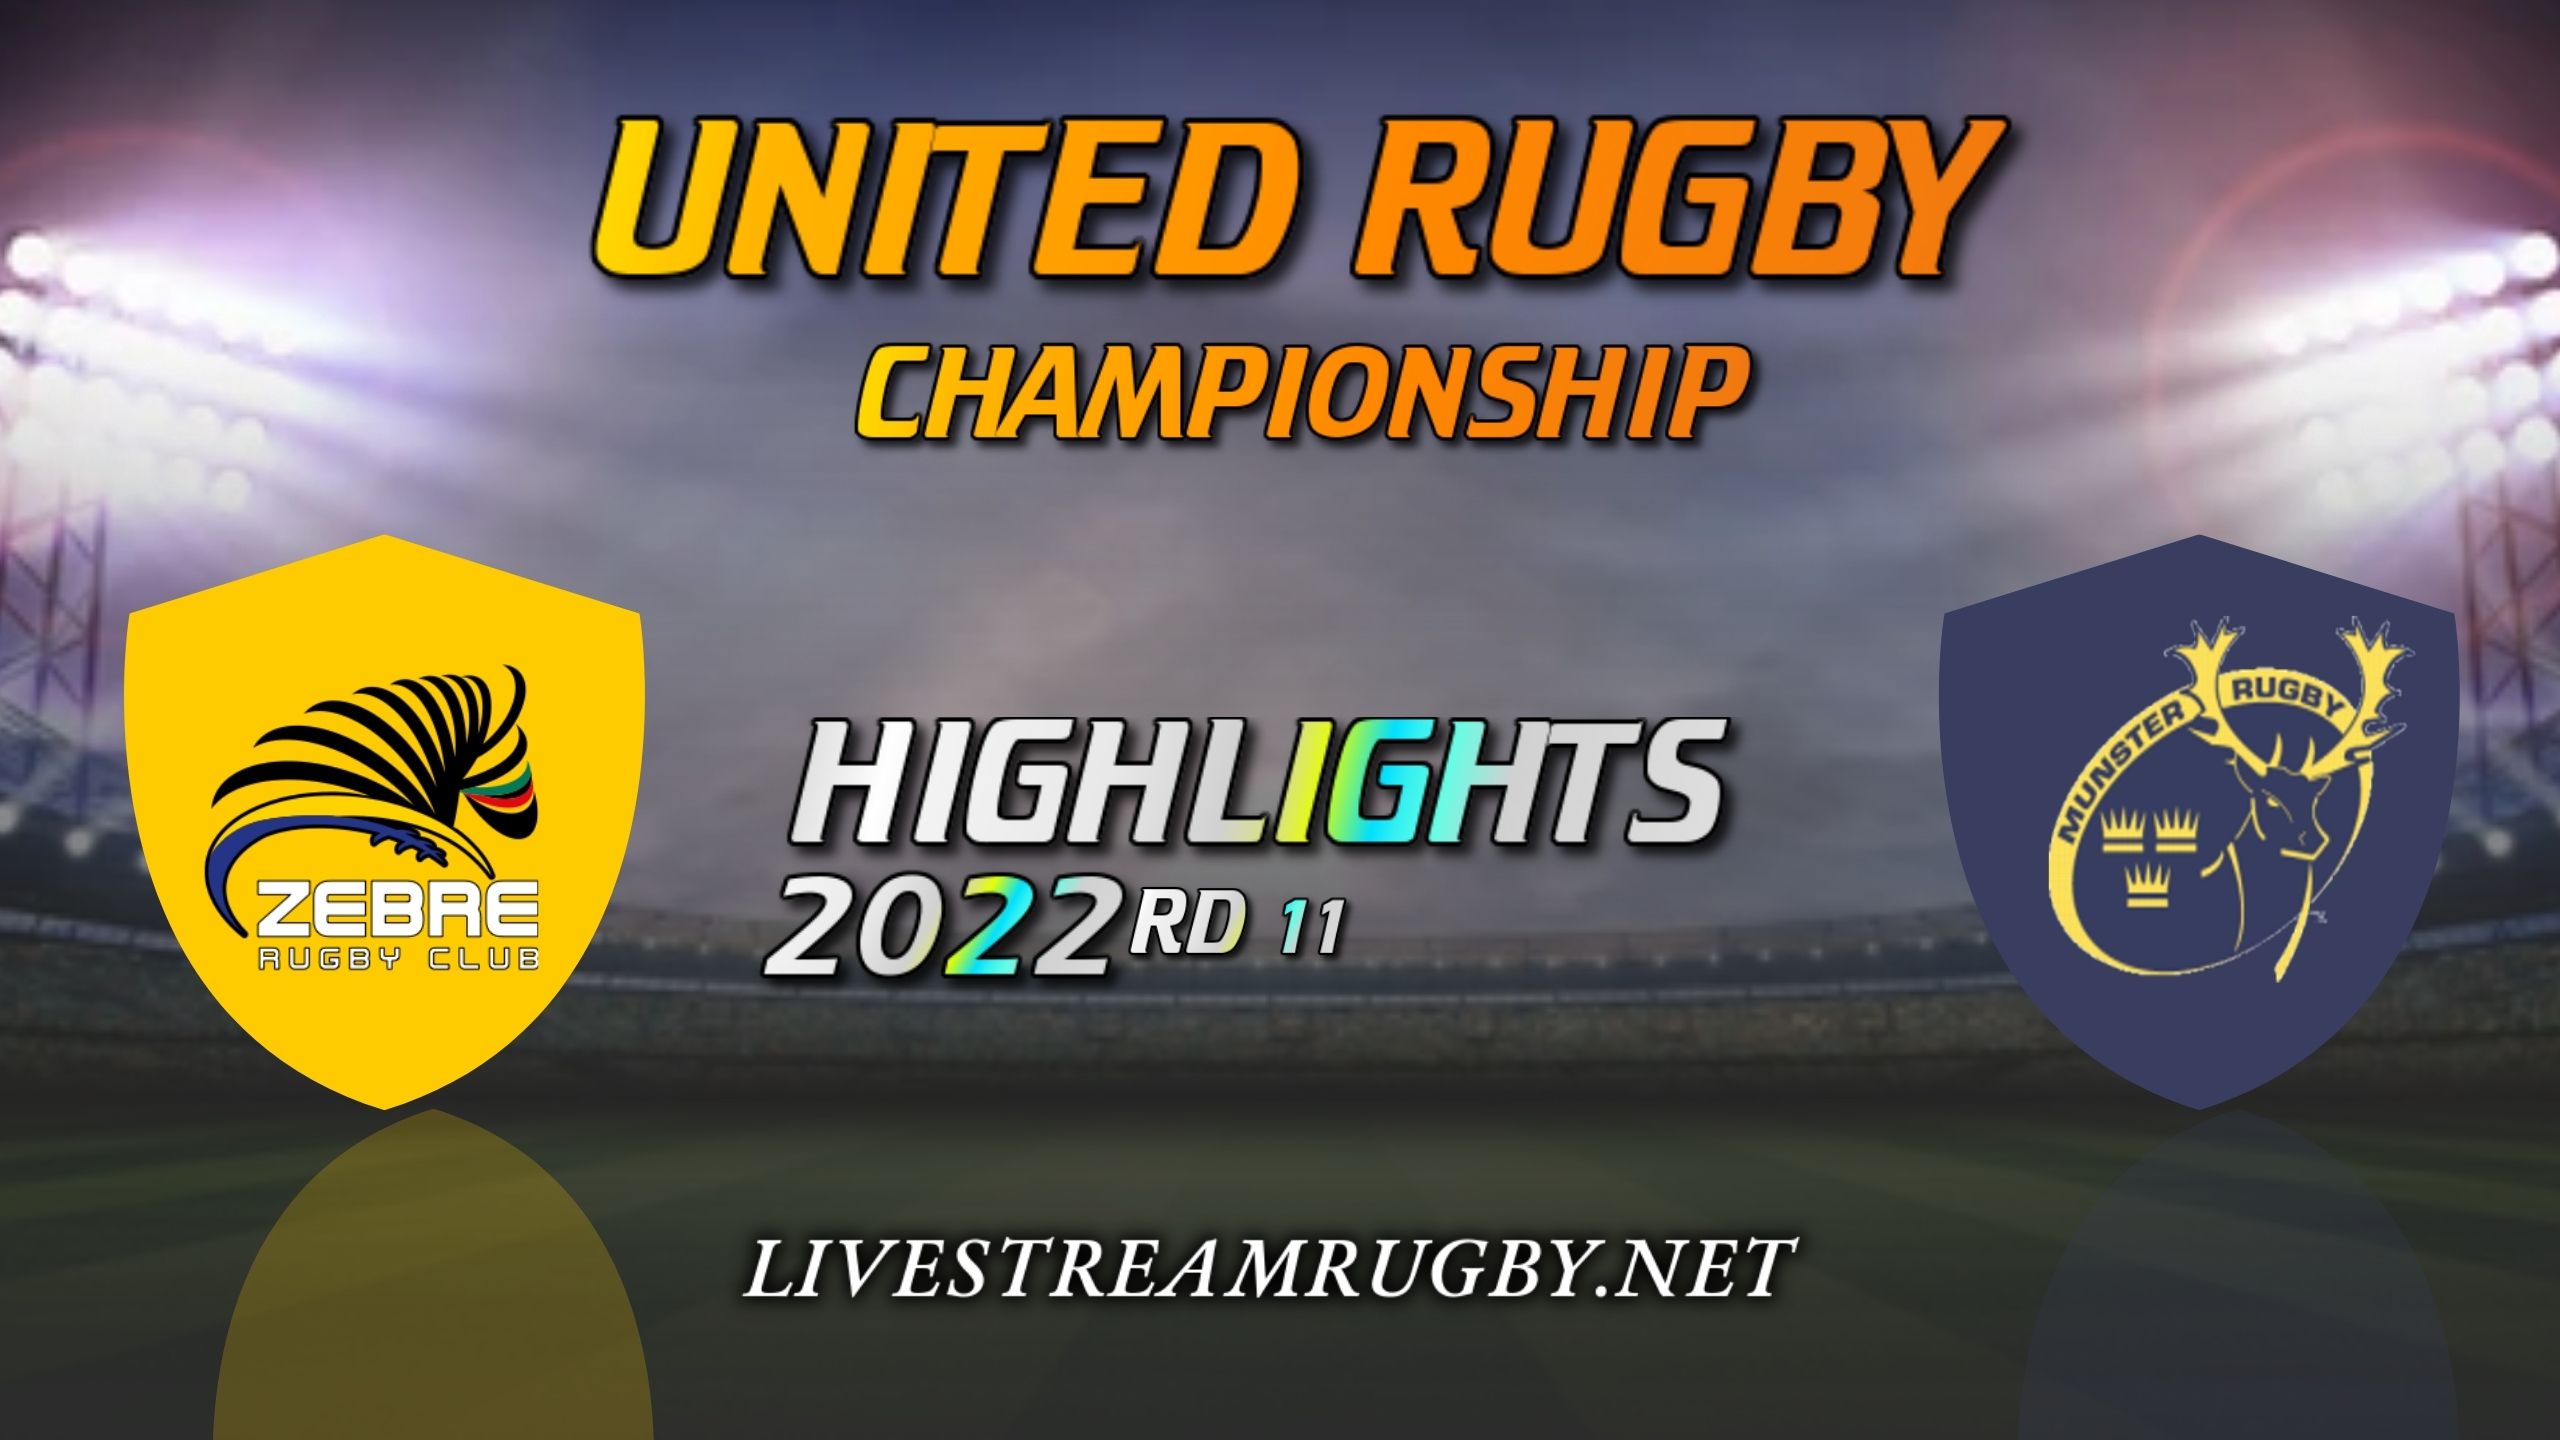 Zebre Vs Munster Highlights 2022 Rd 11 United Rugby